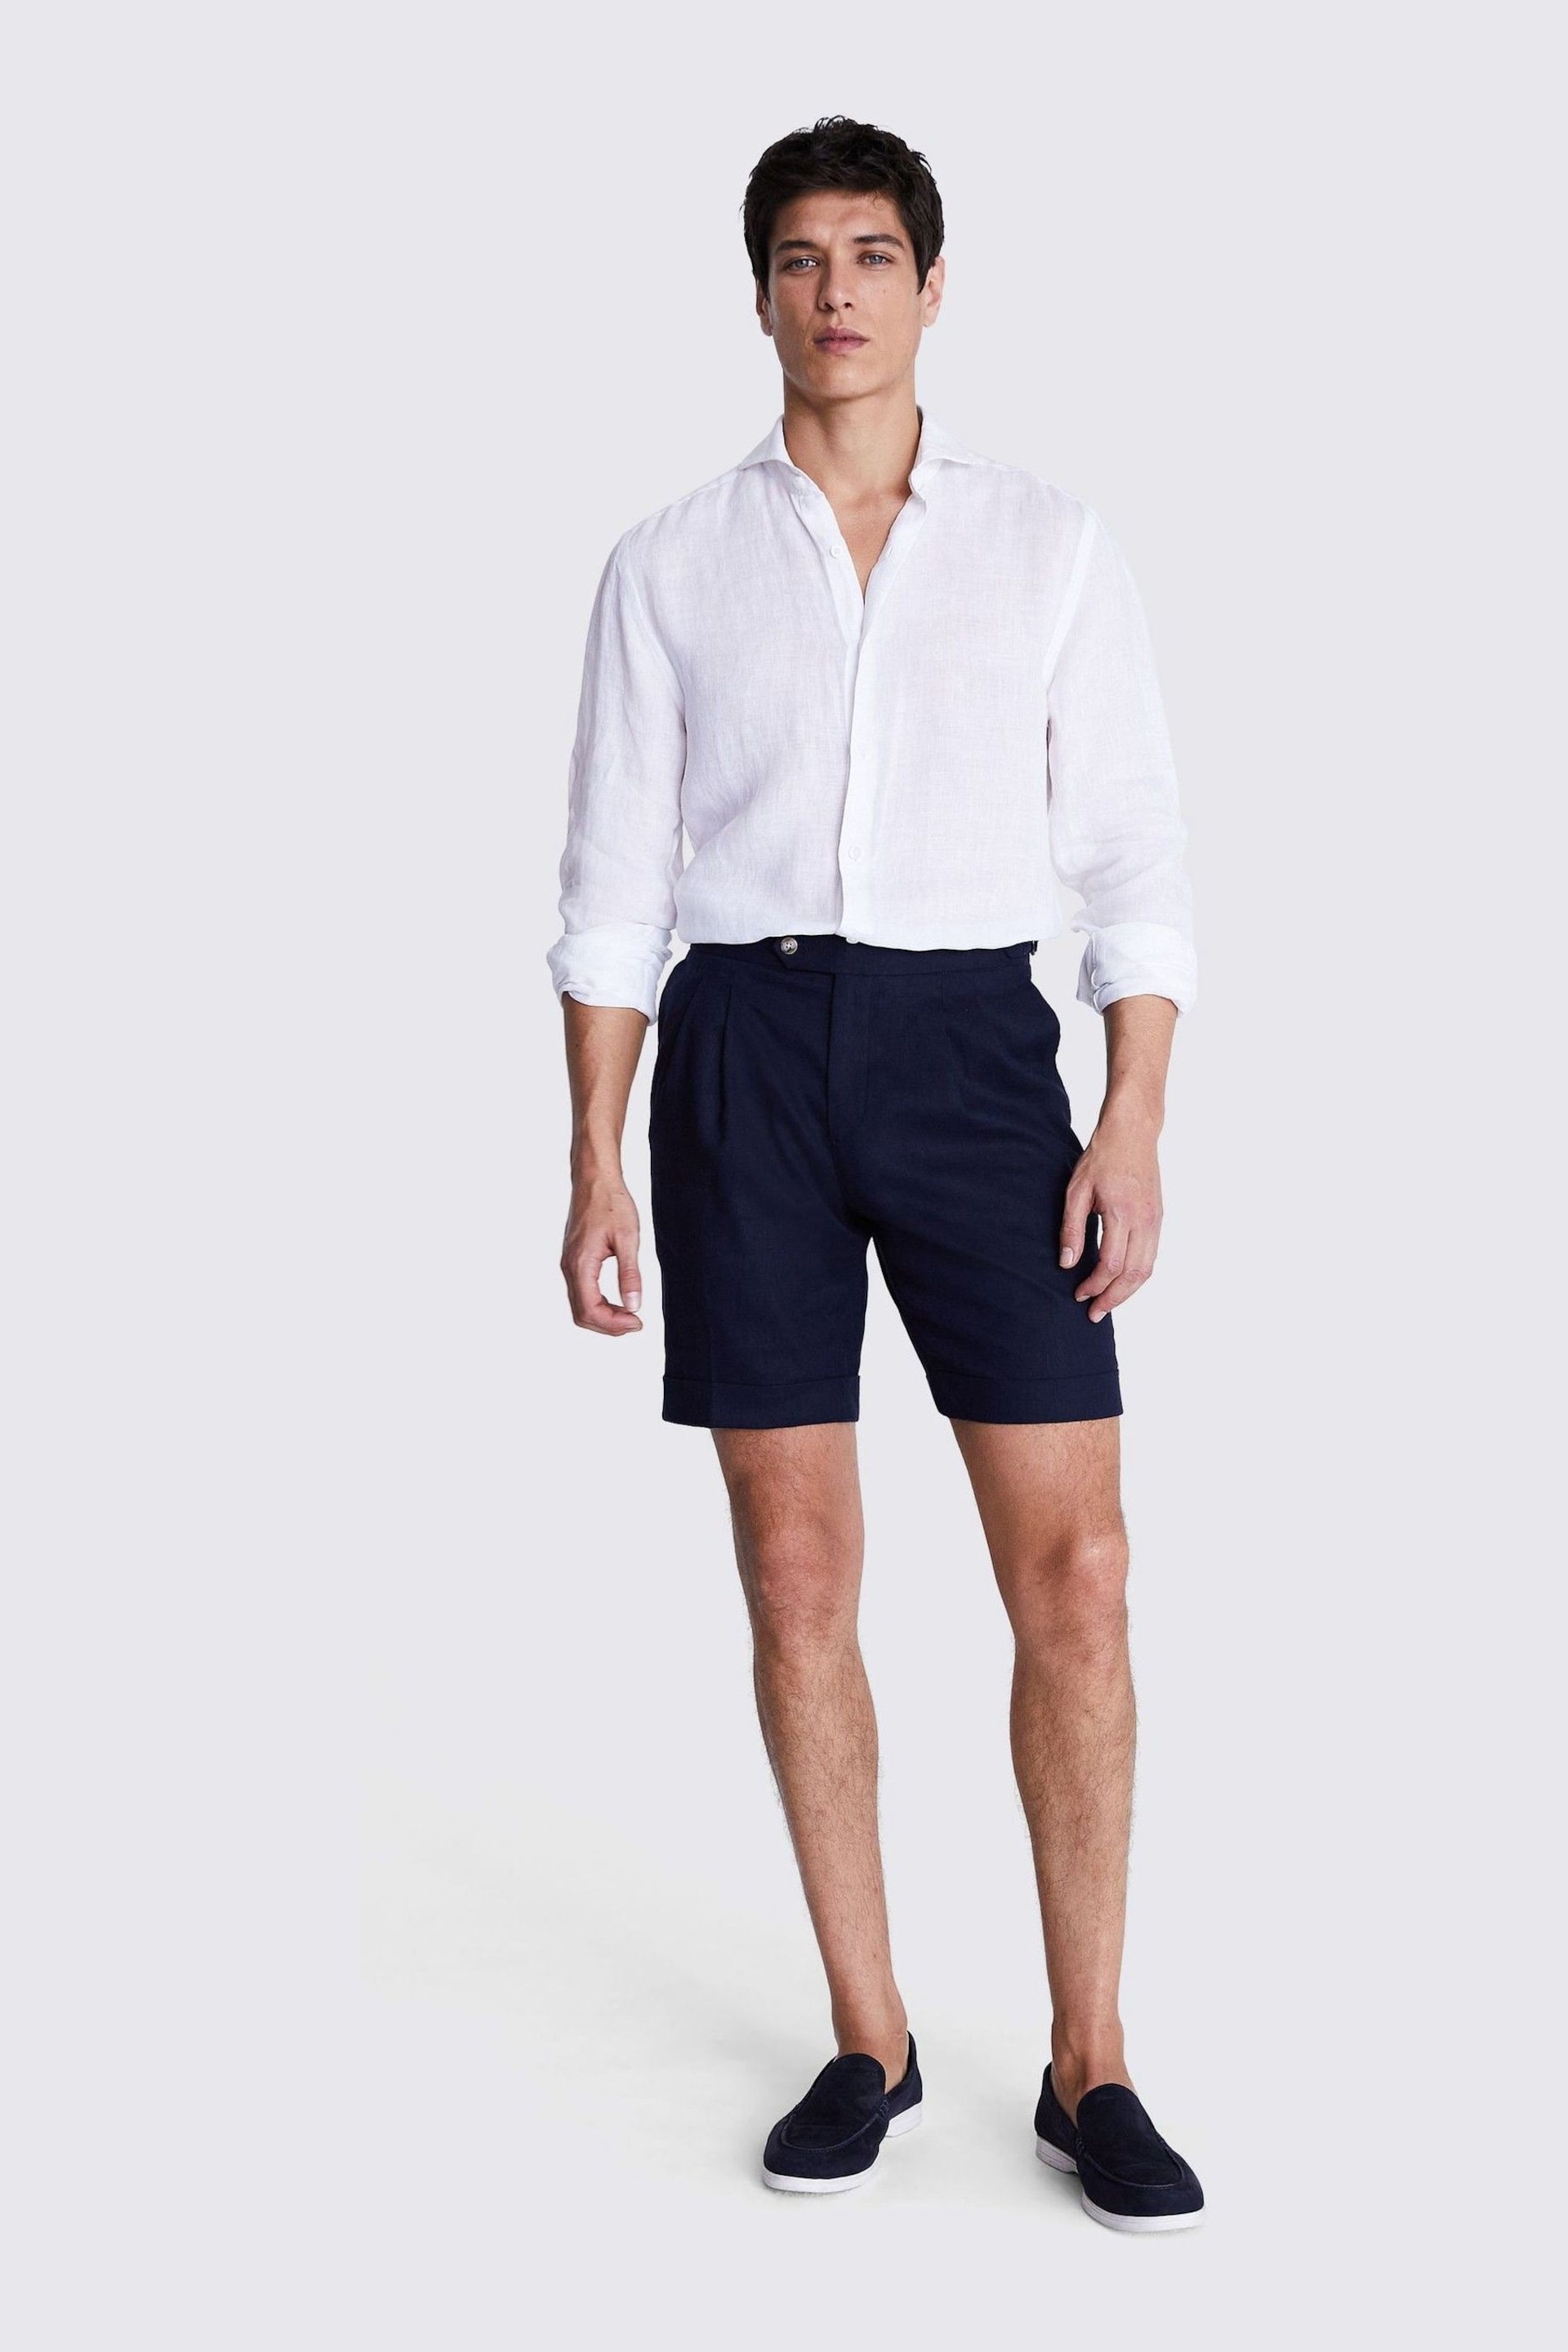 MOSS Blue Matte Linen Shorts - Image 2 of 3